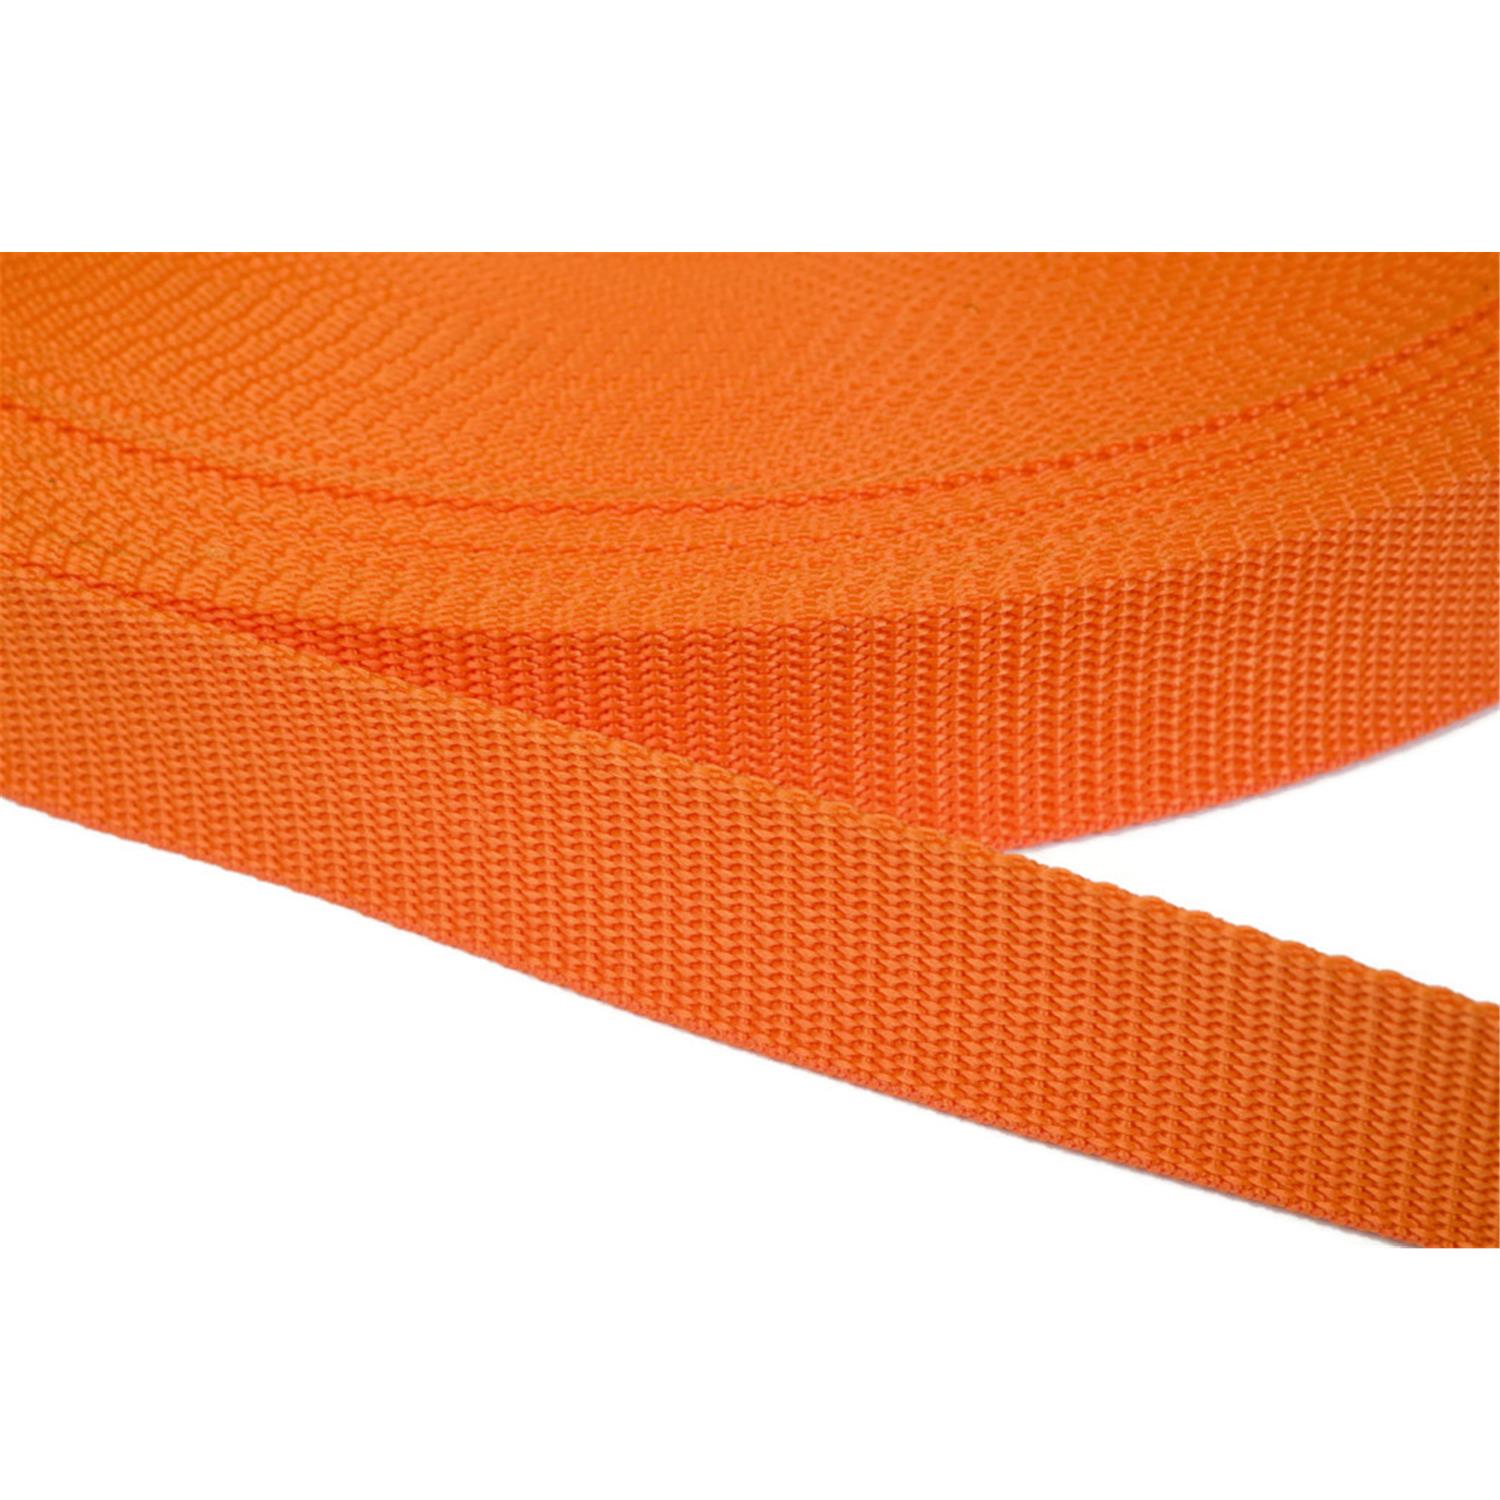 Gurtband 20mm breit aus Polypropylen in 41 Farben 11 - orange 06 Meter